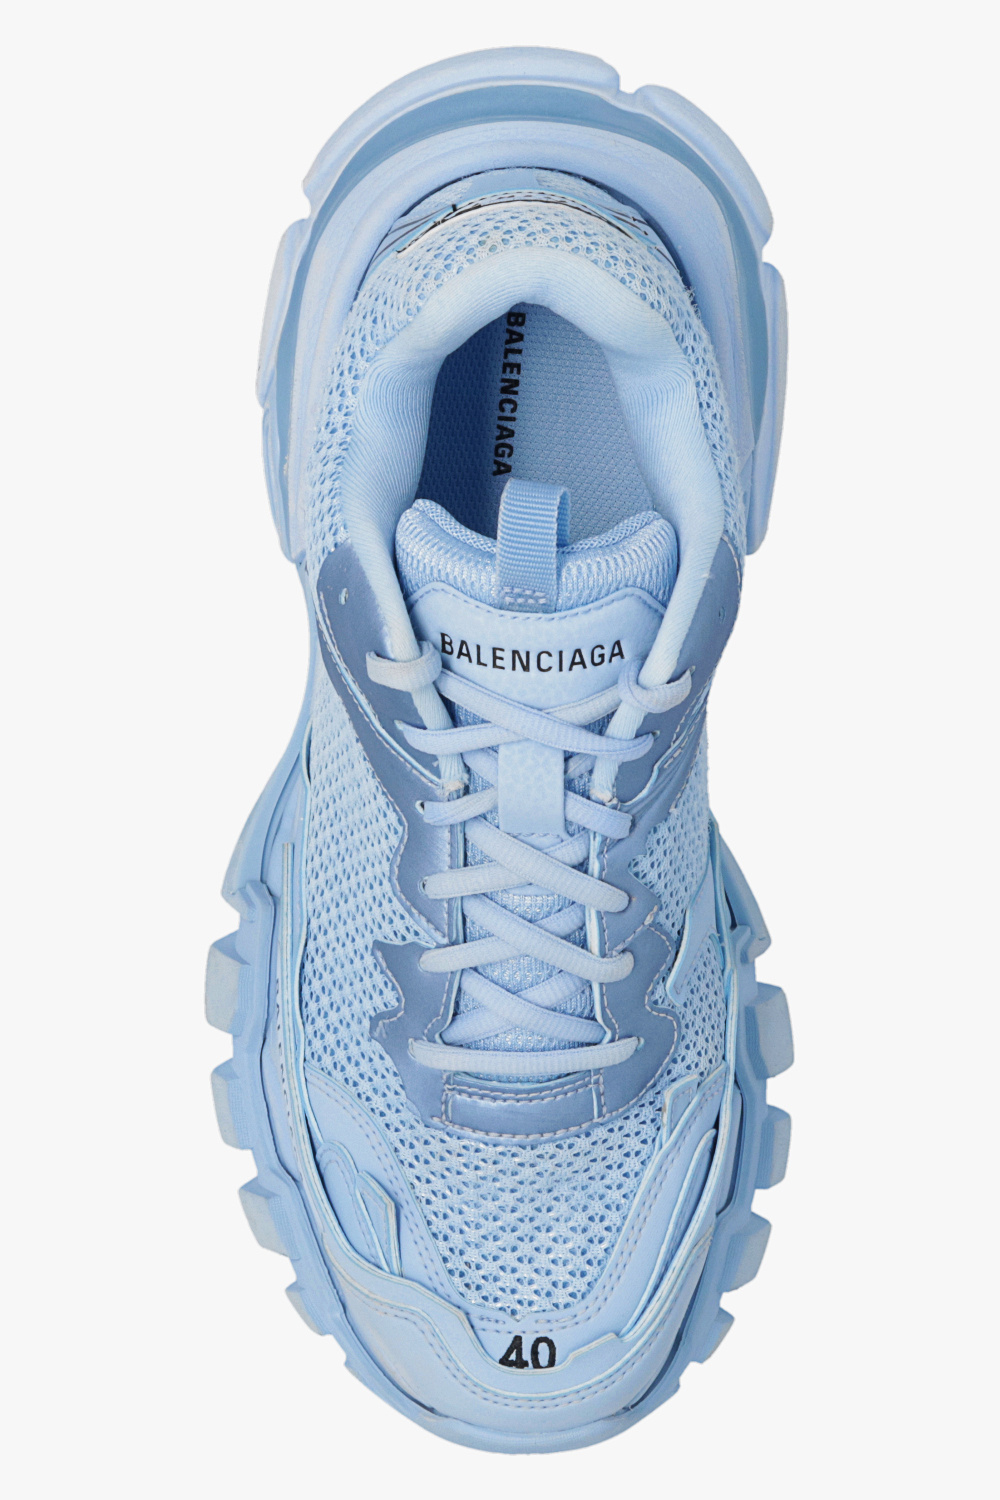 Balenciaga ‘Track.3’ sneakers